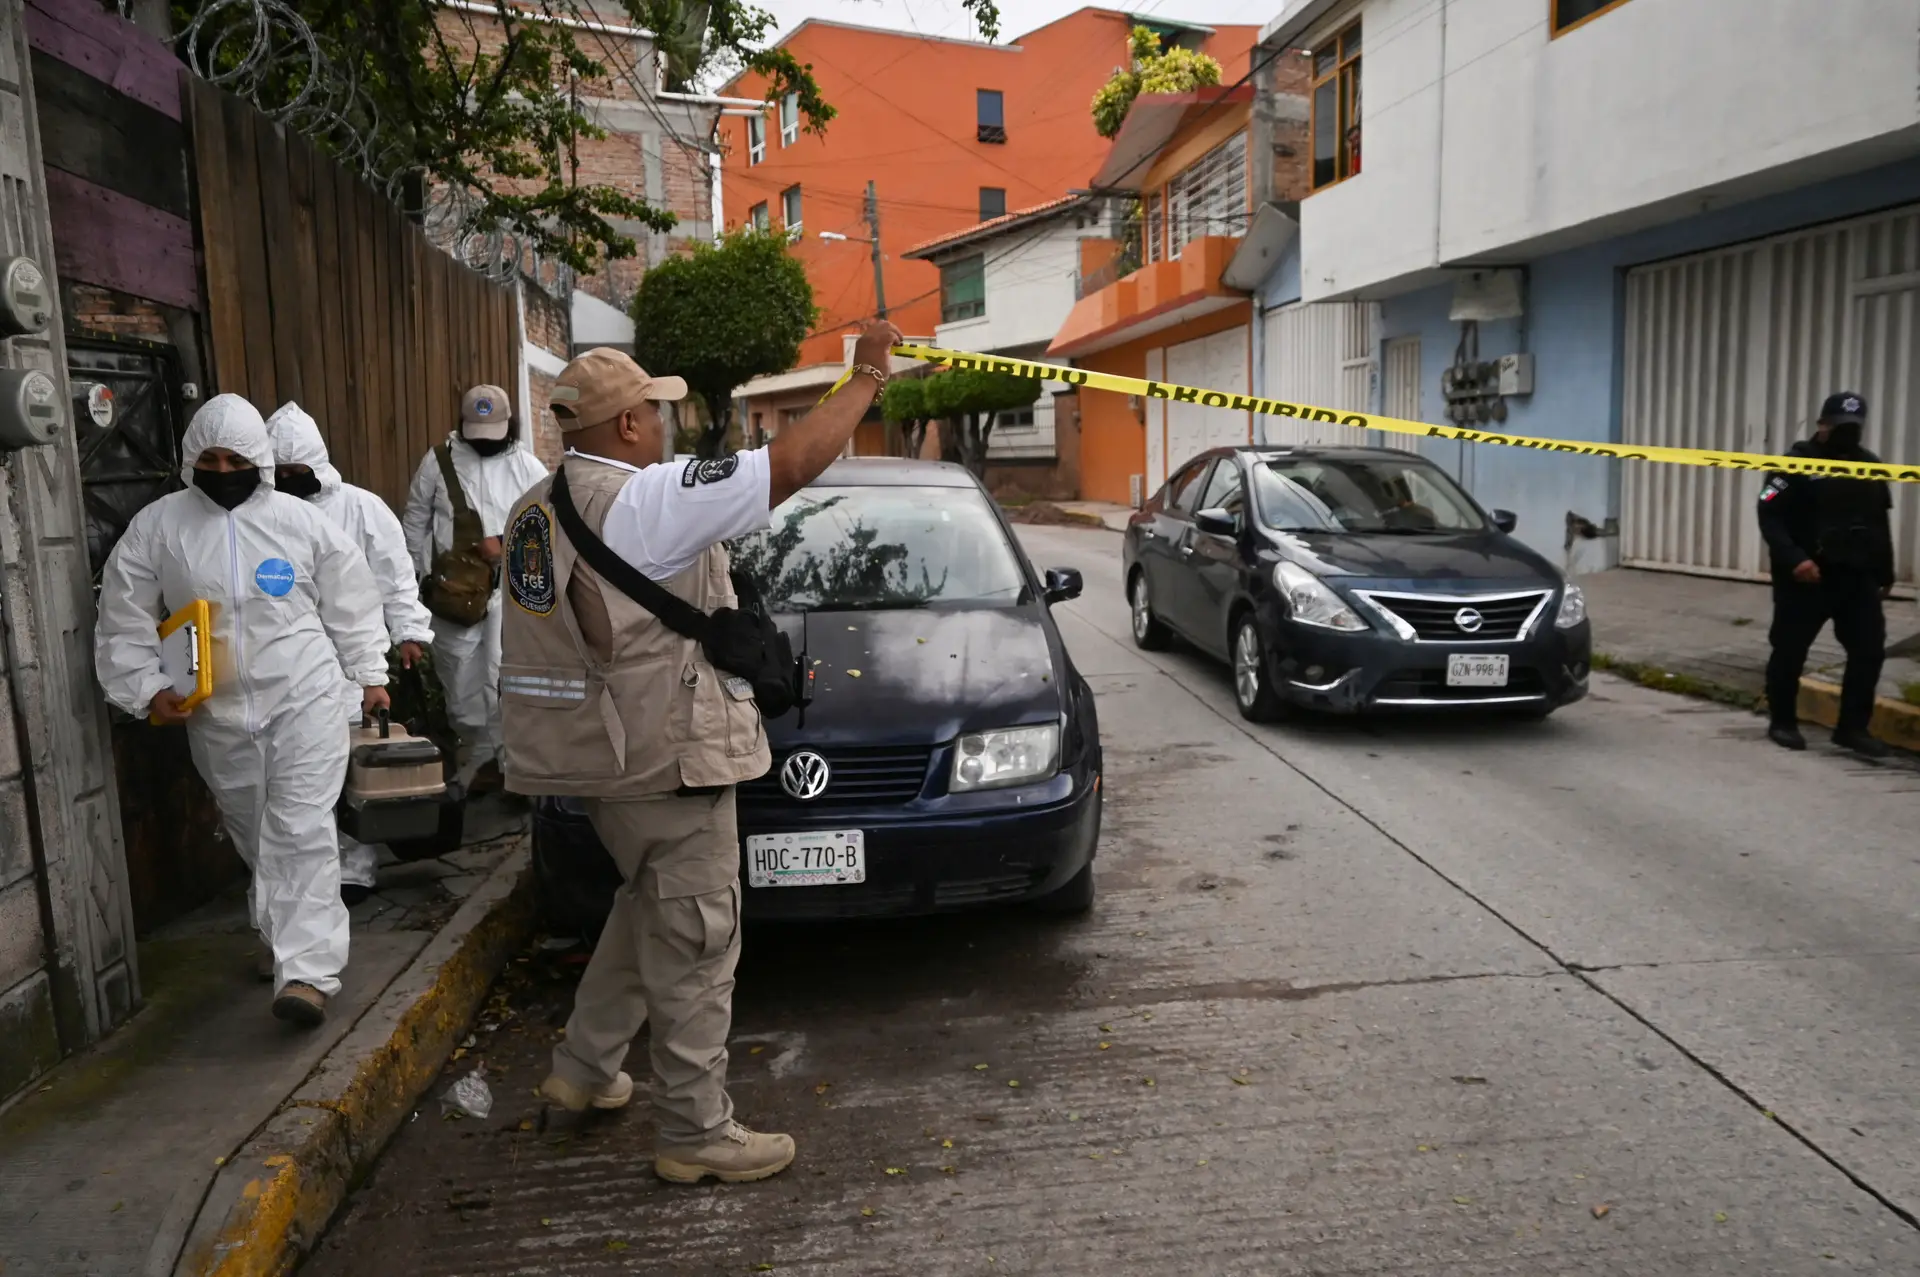 Membros de uma equipa forense caminham perto da cena de crime onde o jornalista Fredid Román foi morto no seu carro por atacantes armados em Chilpancingo, México